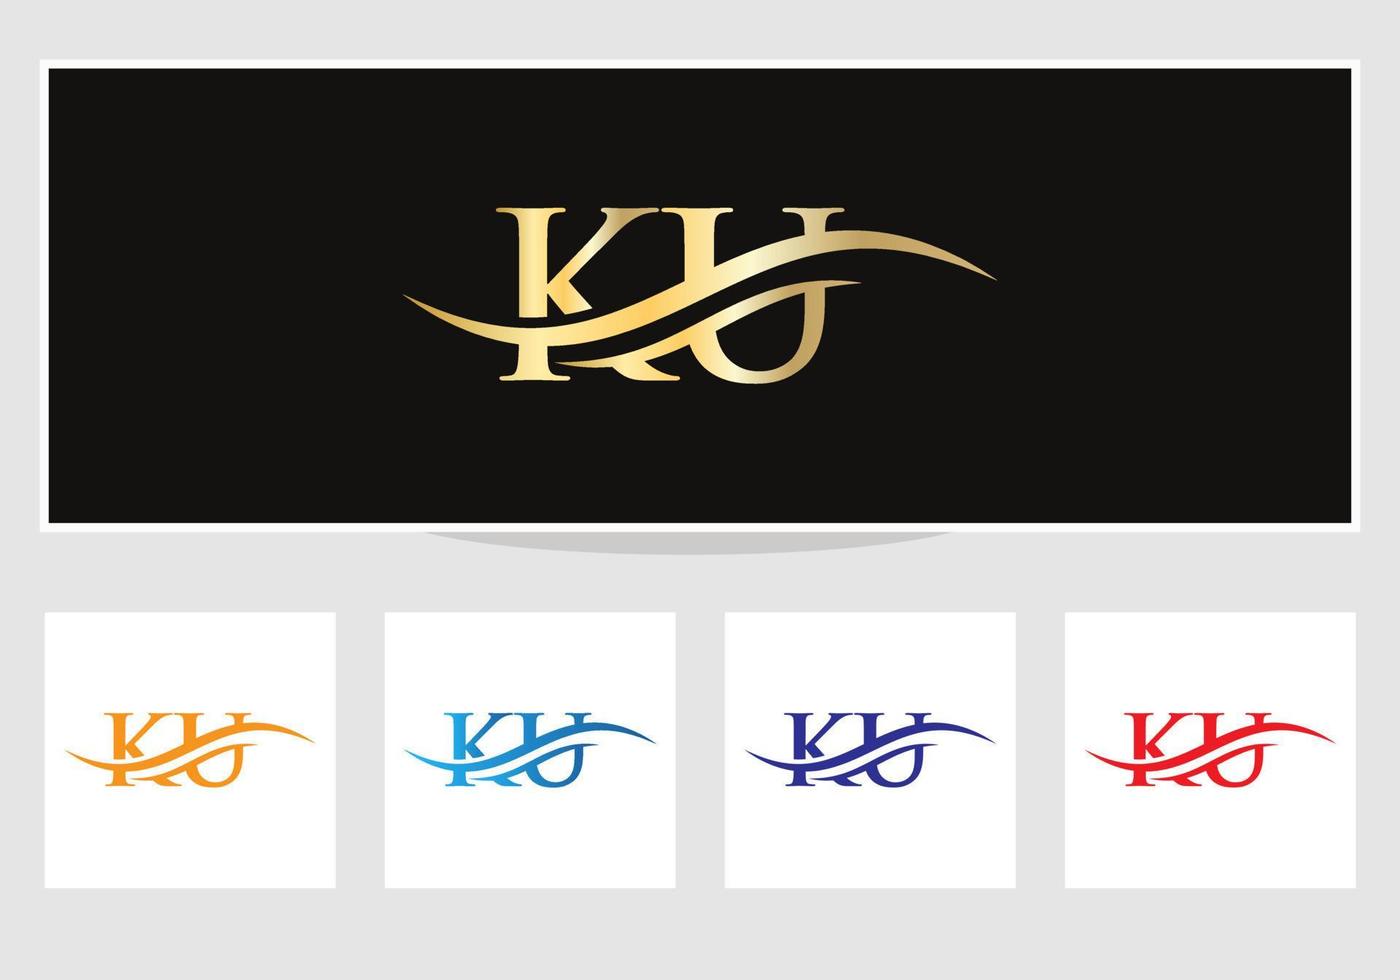 diseño moderno del logotipo ku para la identidad empresarial y empresarial. carta ku creativa con concepto de lujo vector